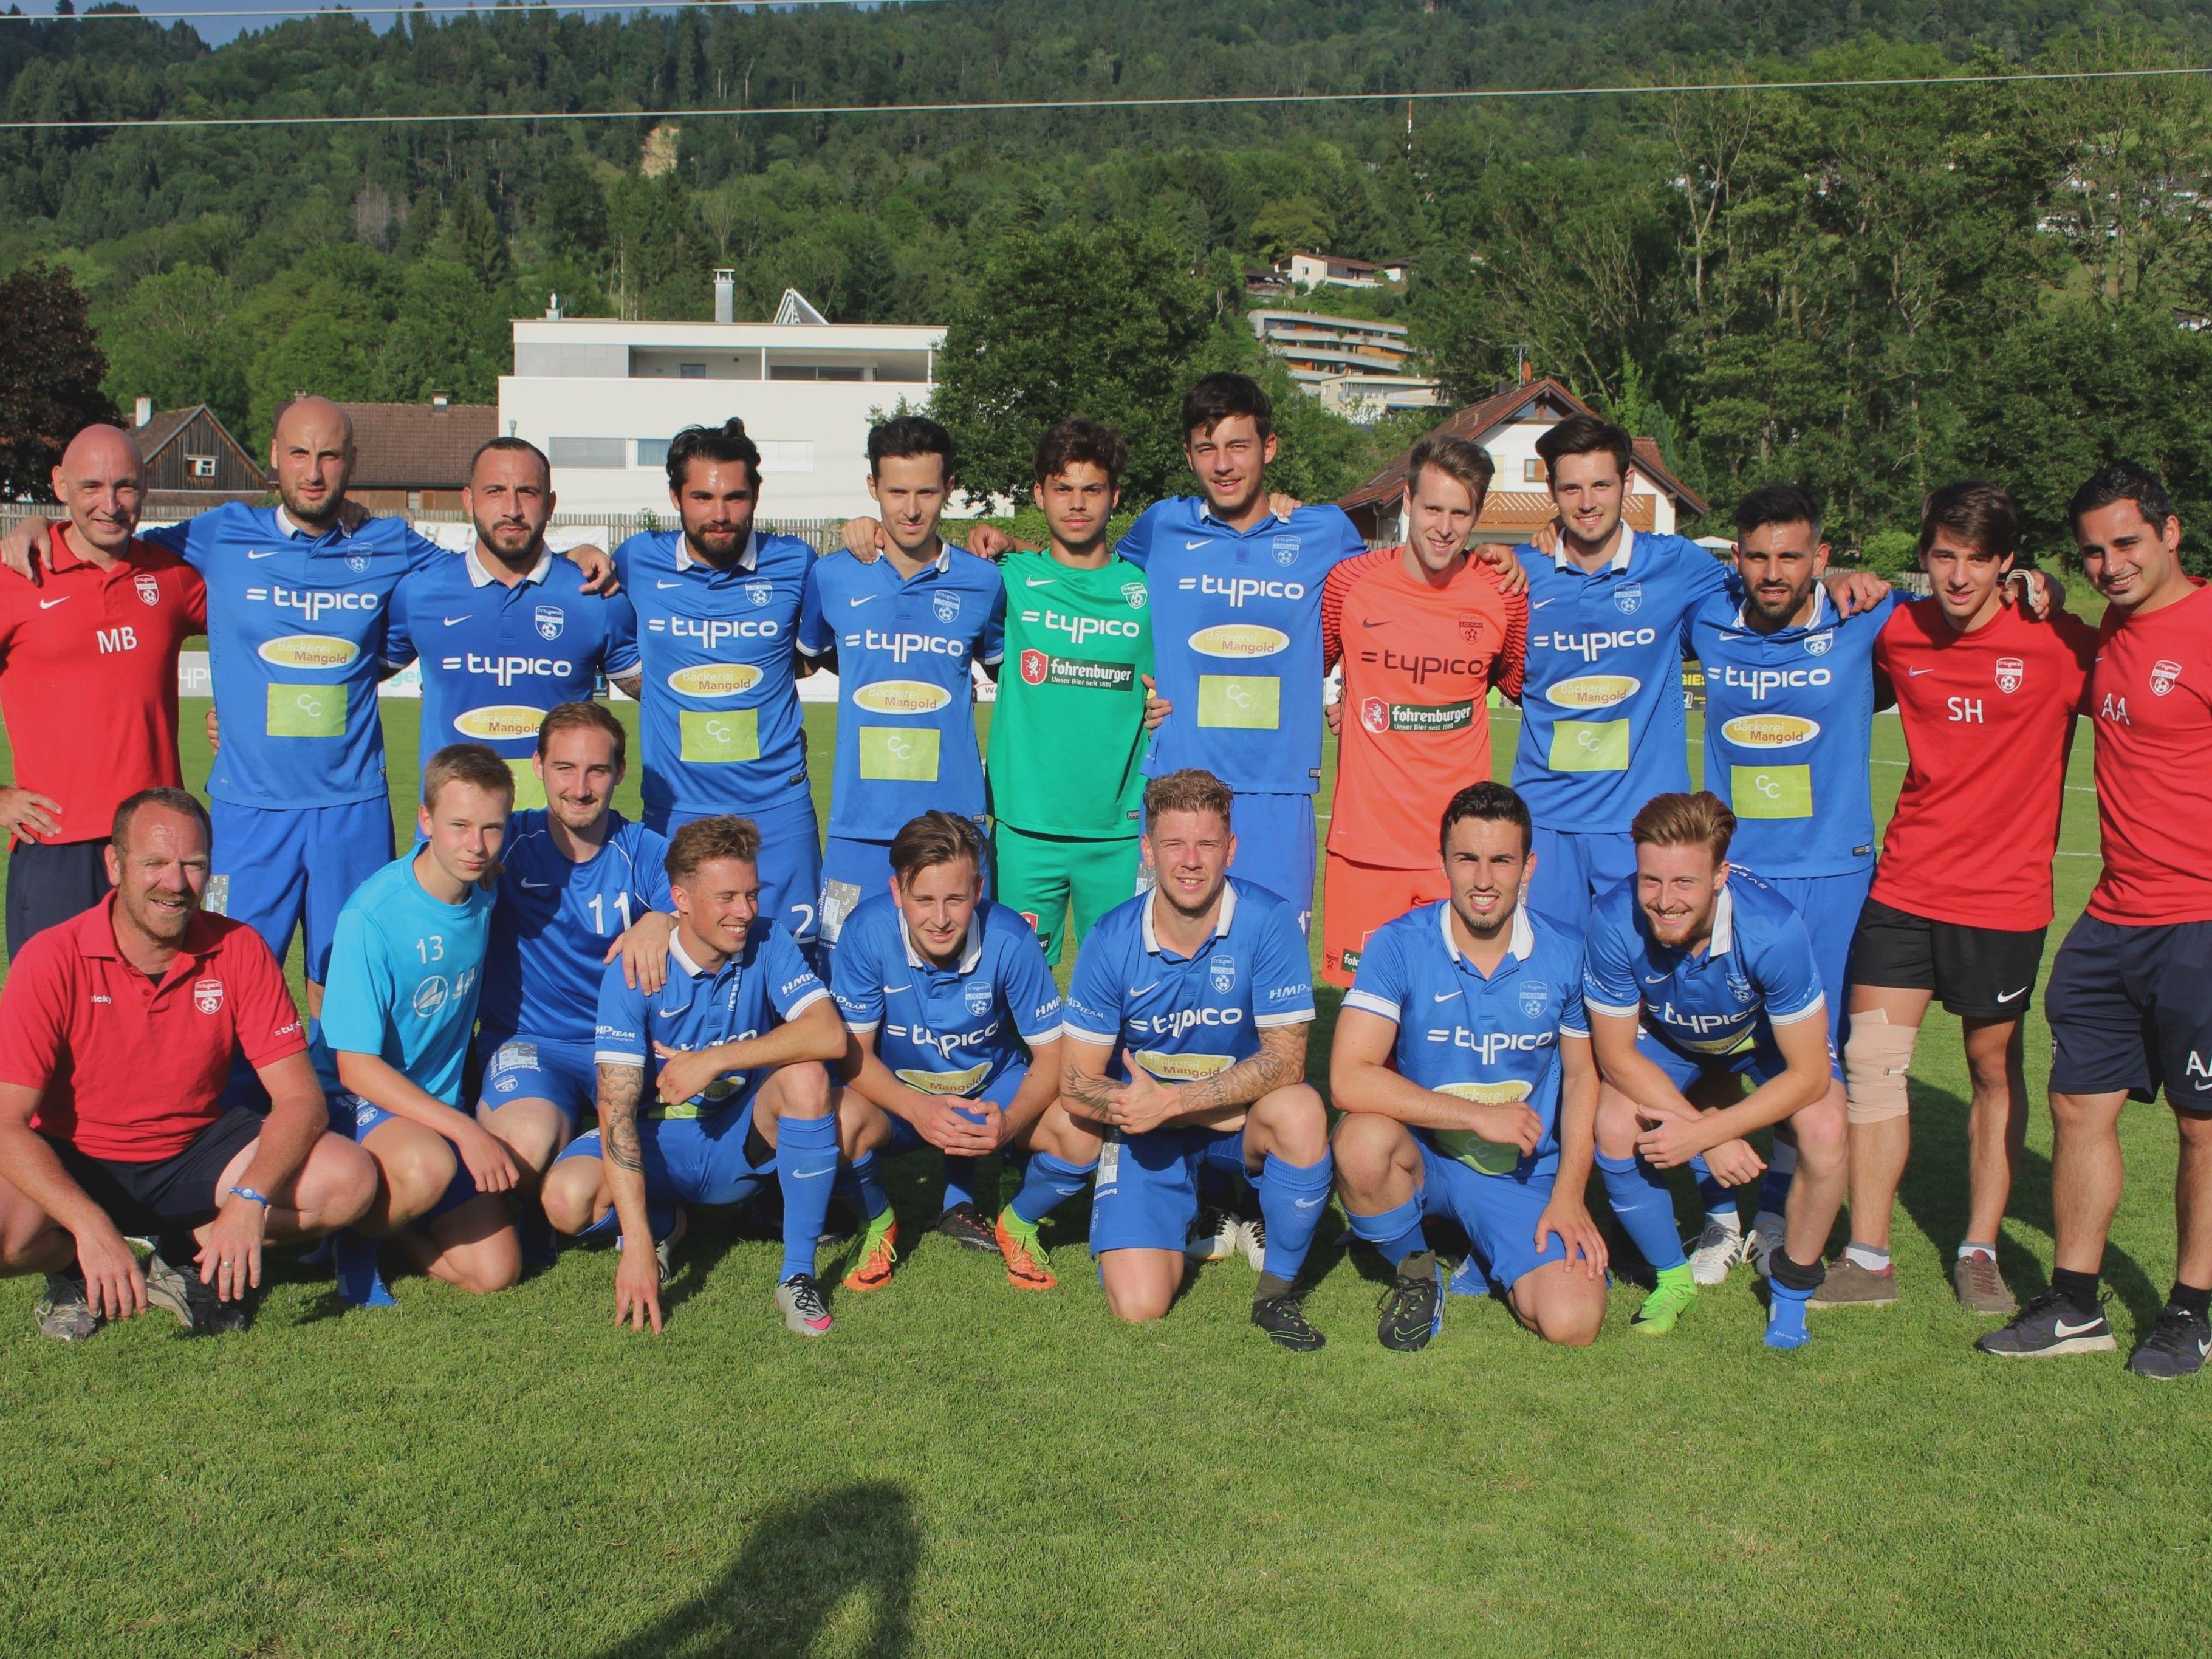 Die Kampfmannschaft des SV Typico Lochau beendete die Vorarlberger Meisterschaft 2016/17 auf dem ausgezeichneten 4. Tabellenplatz in der Landesliga.